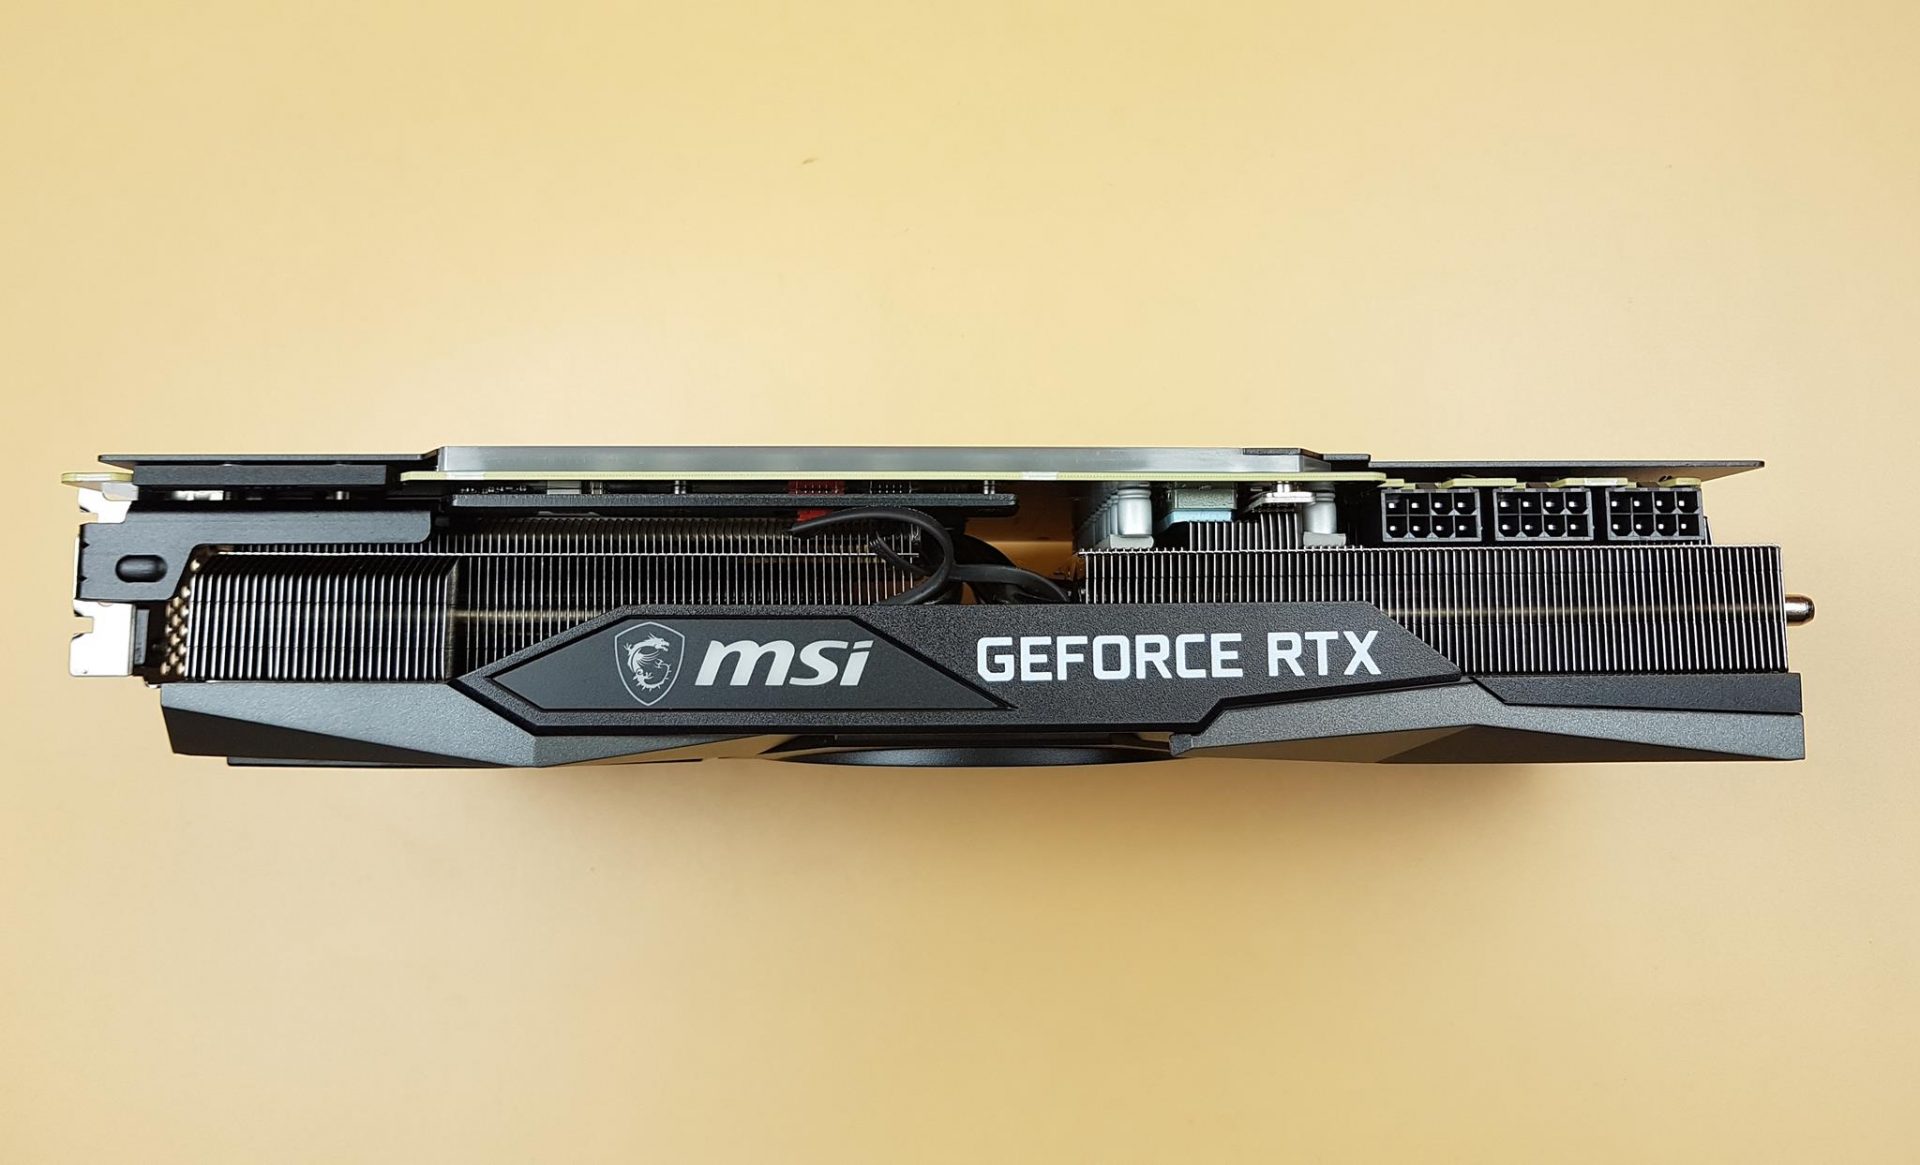 Heatsink of the MSI GeForce RTX 3090